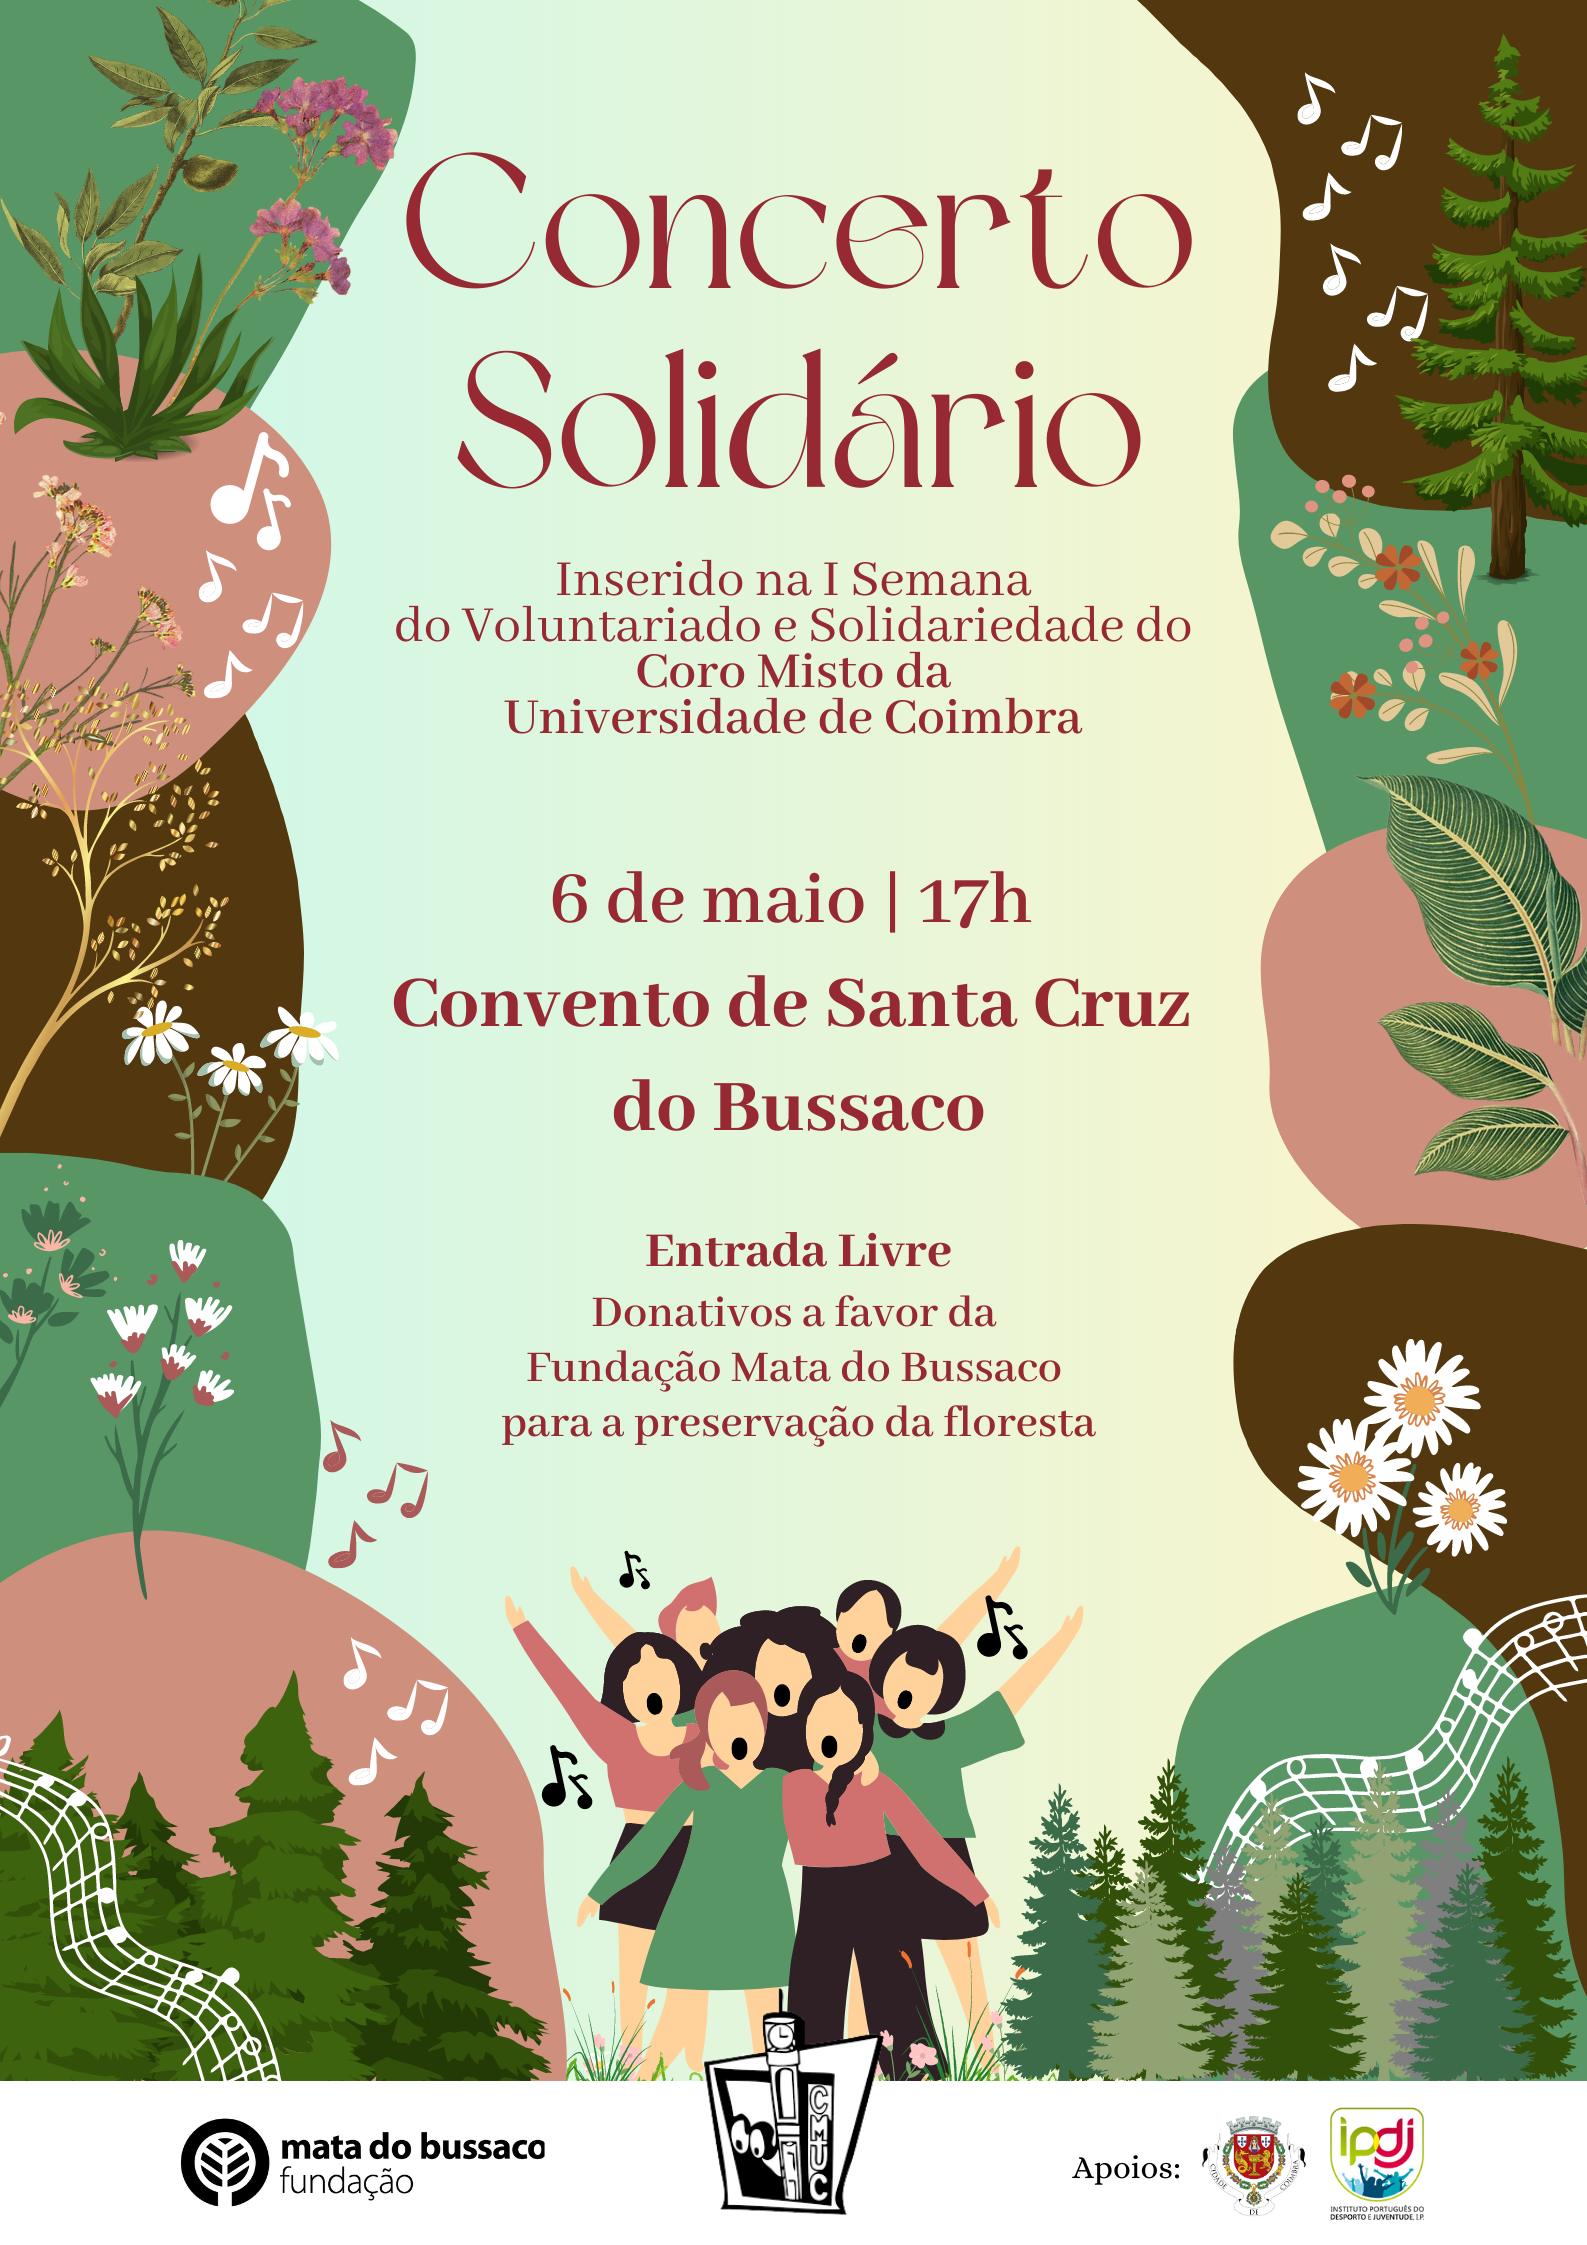 Concerto Solidário – Coro Misto da Universidade de Coimbra